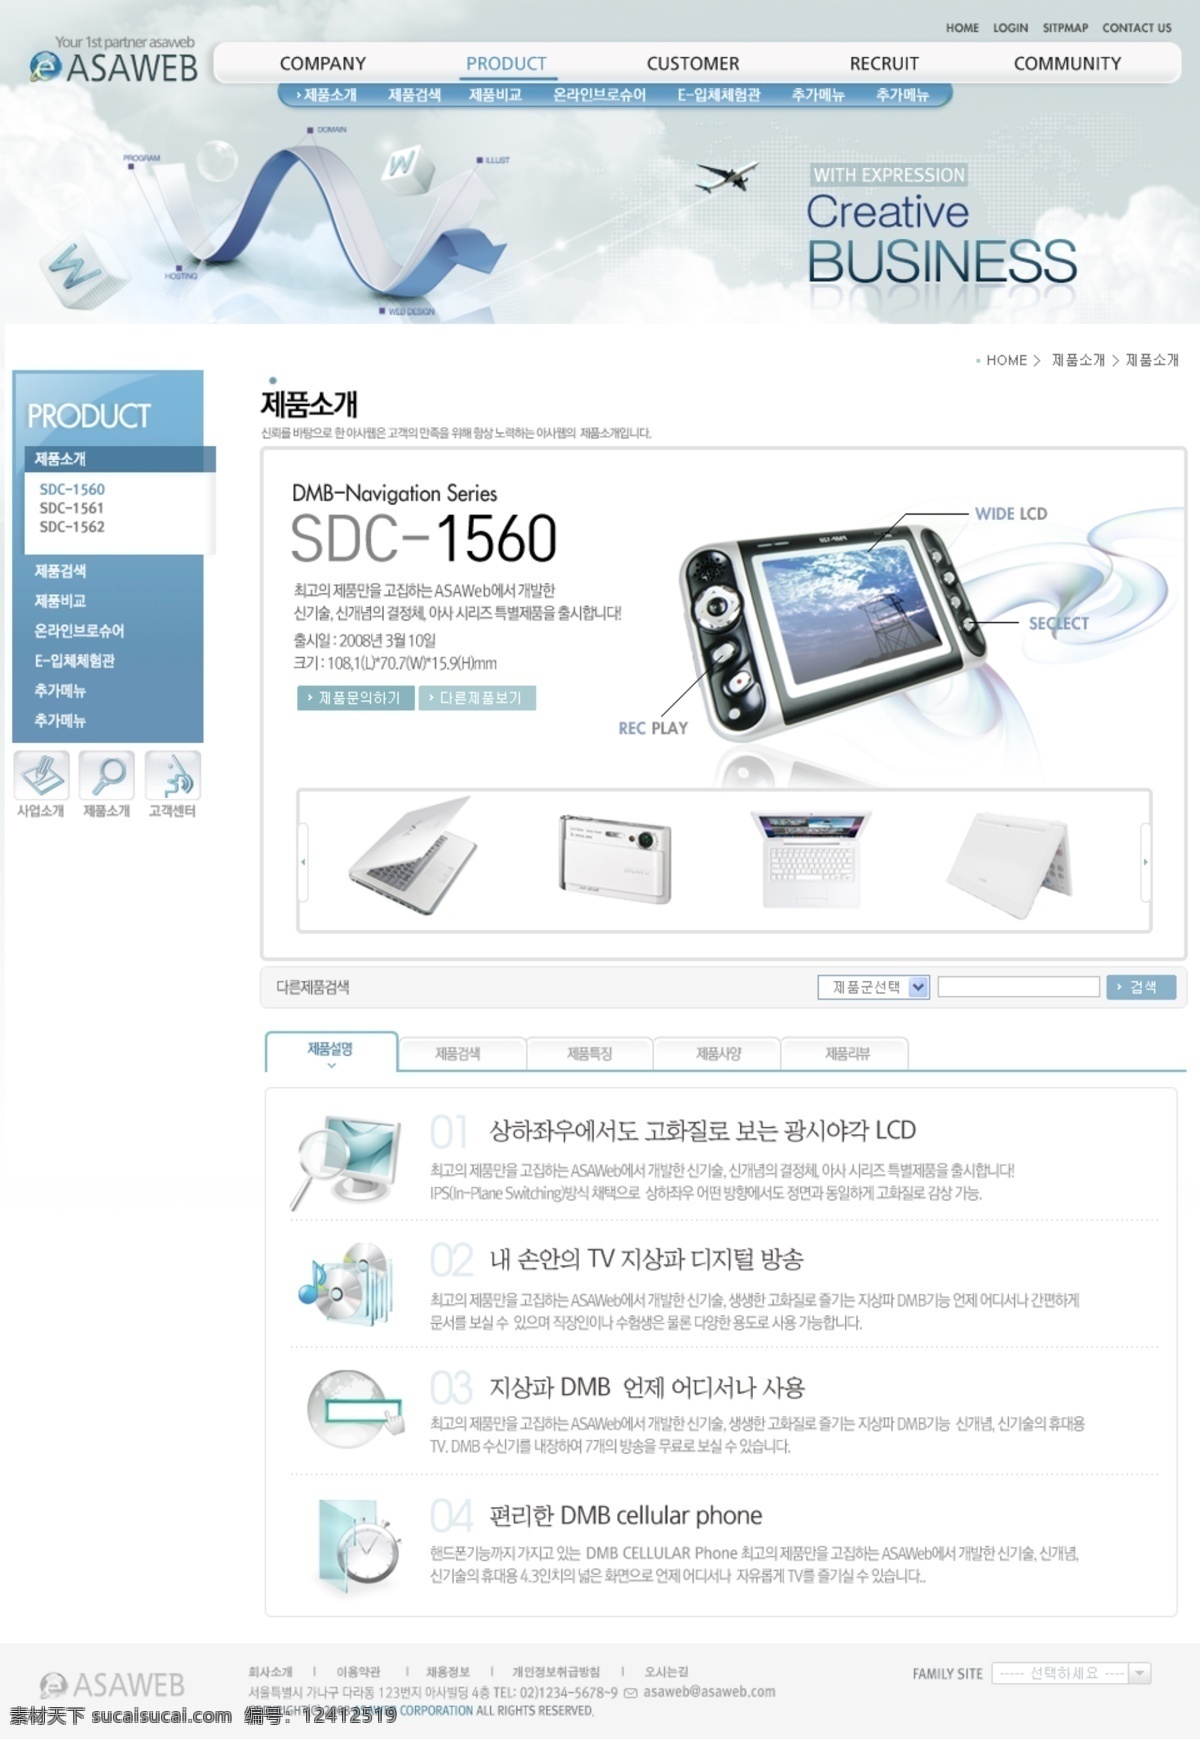 韩国 蓝色 网页 二级 产品 页面 模版 渡 扯 恫 芬 婺 嫠 夭 南 略 网页素材 网页模板